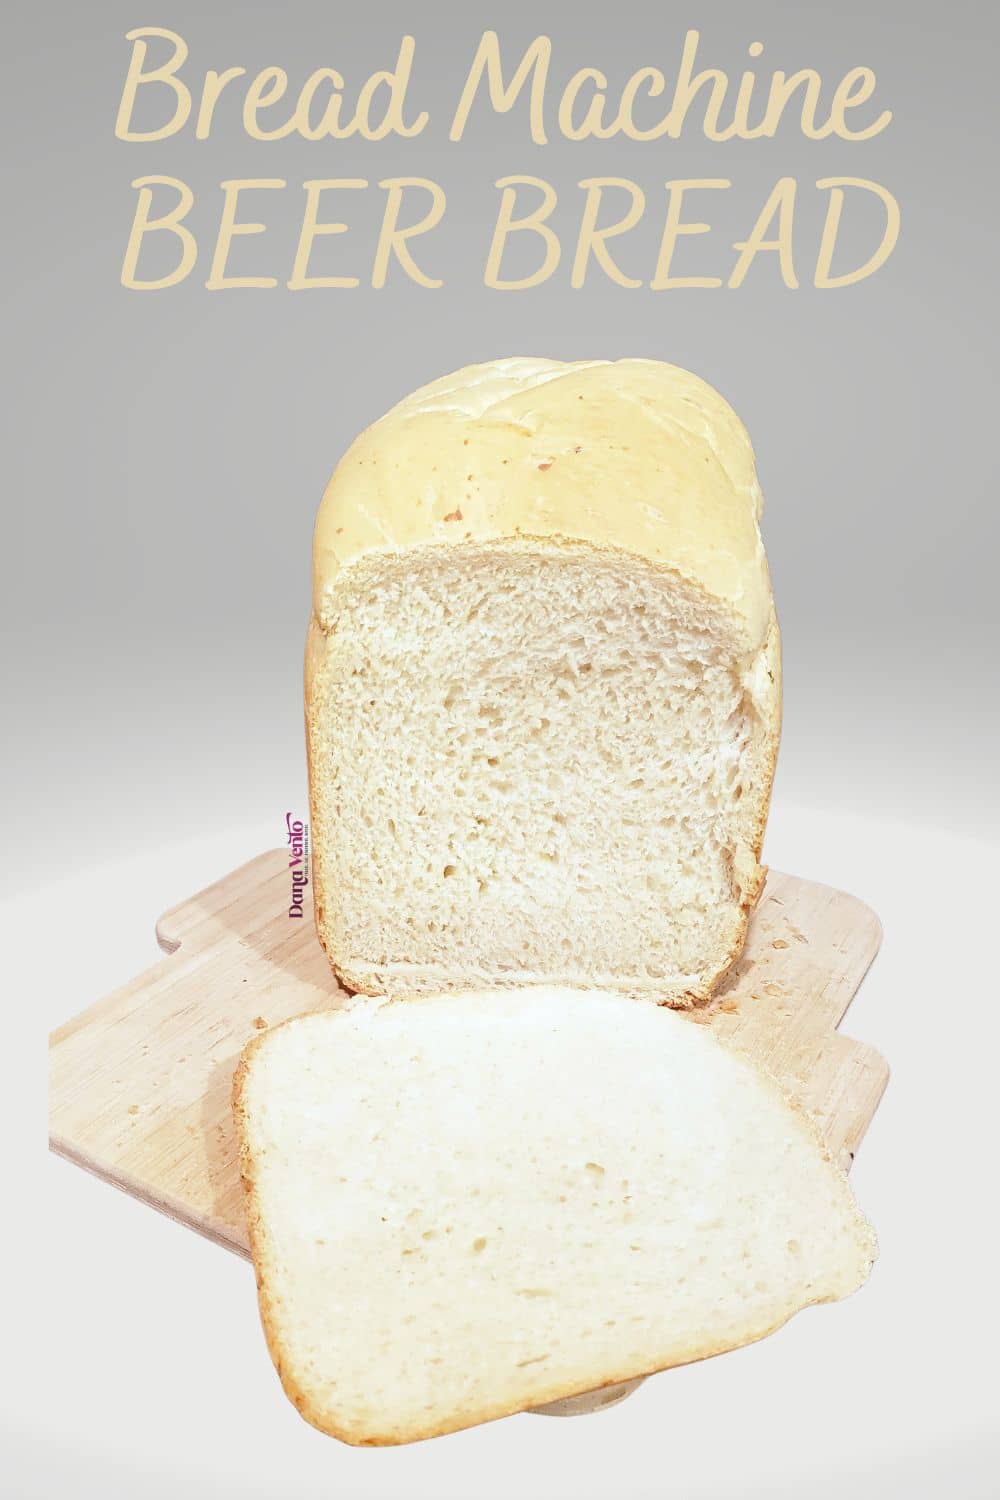 Bread Machine Beer Bread Sliced Open